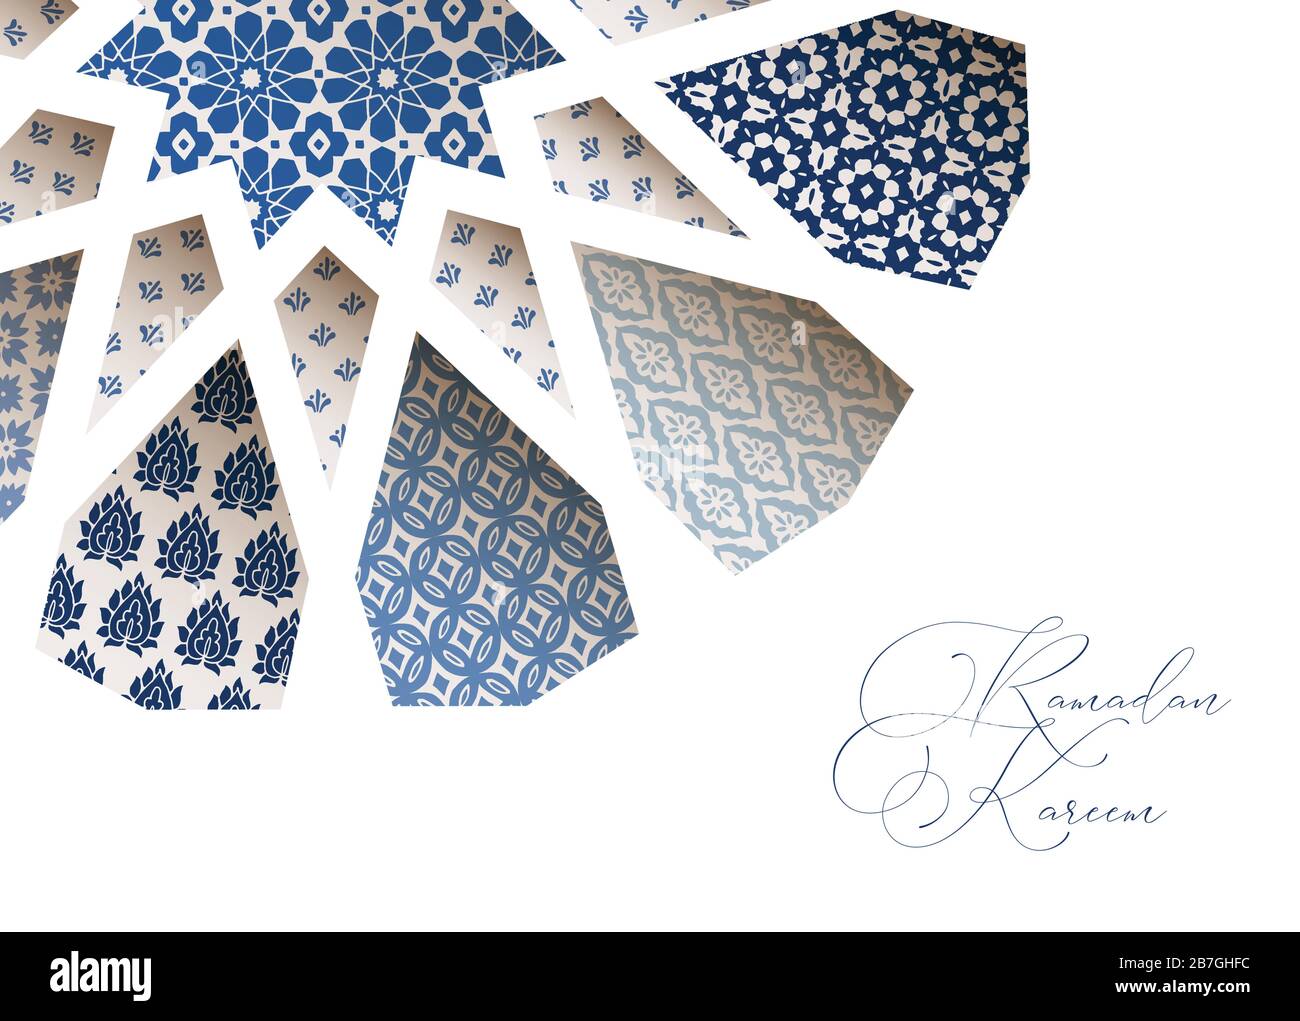 Primo piano di piastrelle di Morroccan ornamentali blu attraverso il disegno bianco di forma a stella araba. Biglietto d'auguri, invito per le vacanze musulmane Ramadan Kareem. Vettore Illustrazione Vettoriale